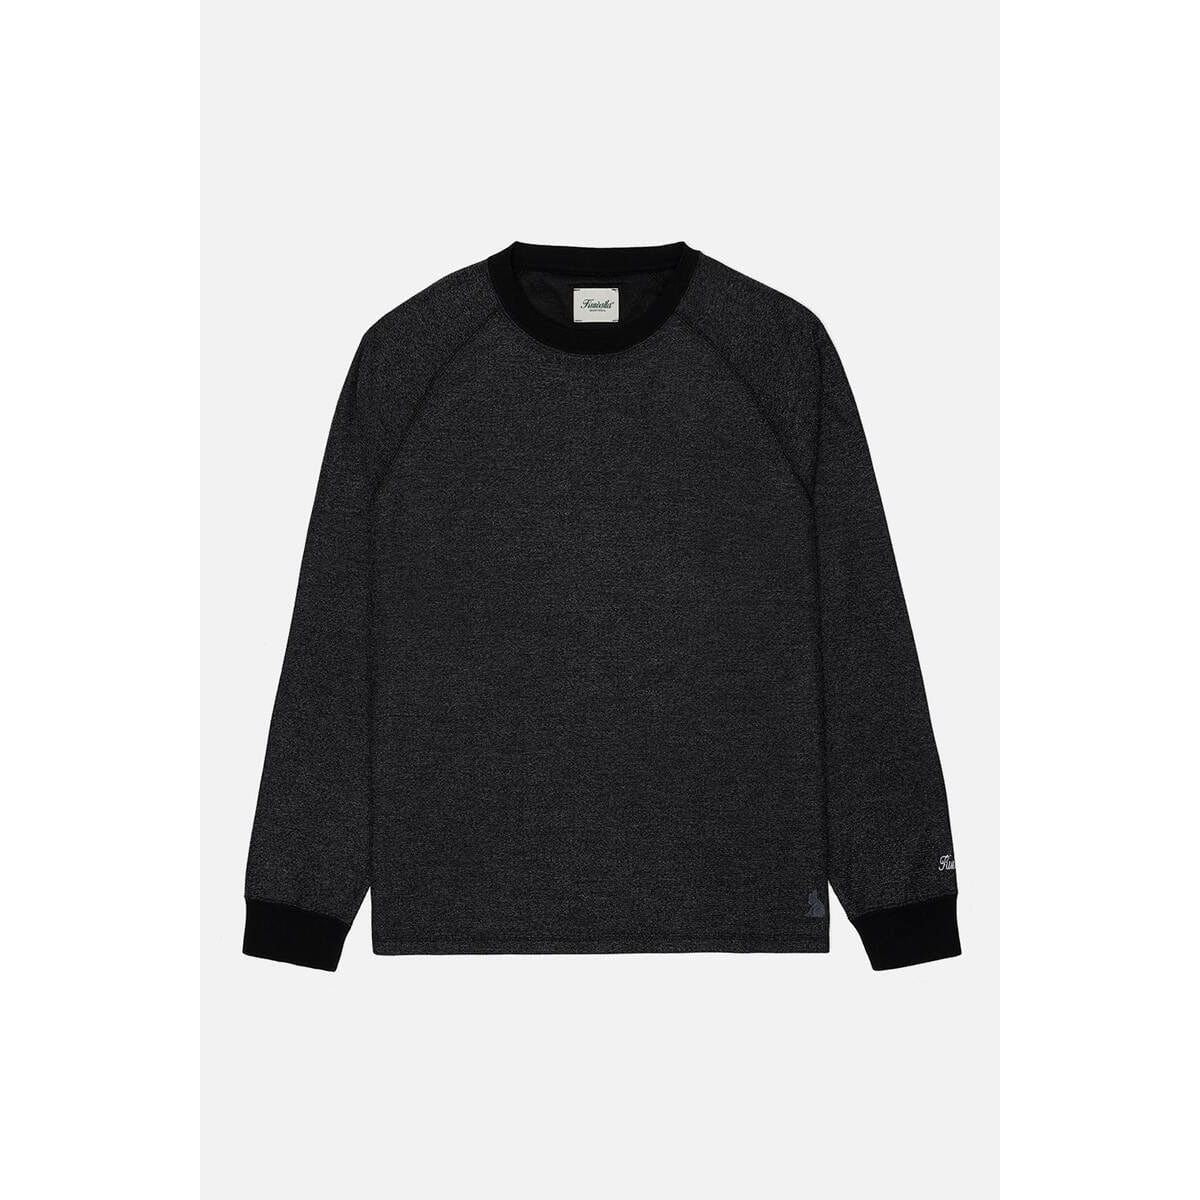 Kuwalla | Tee Marled Black / S Kuwalla Marled Thermal Sweater